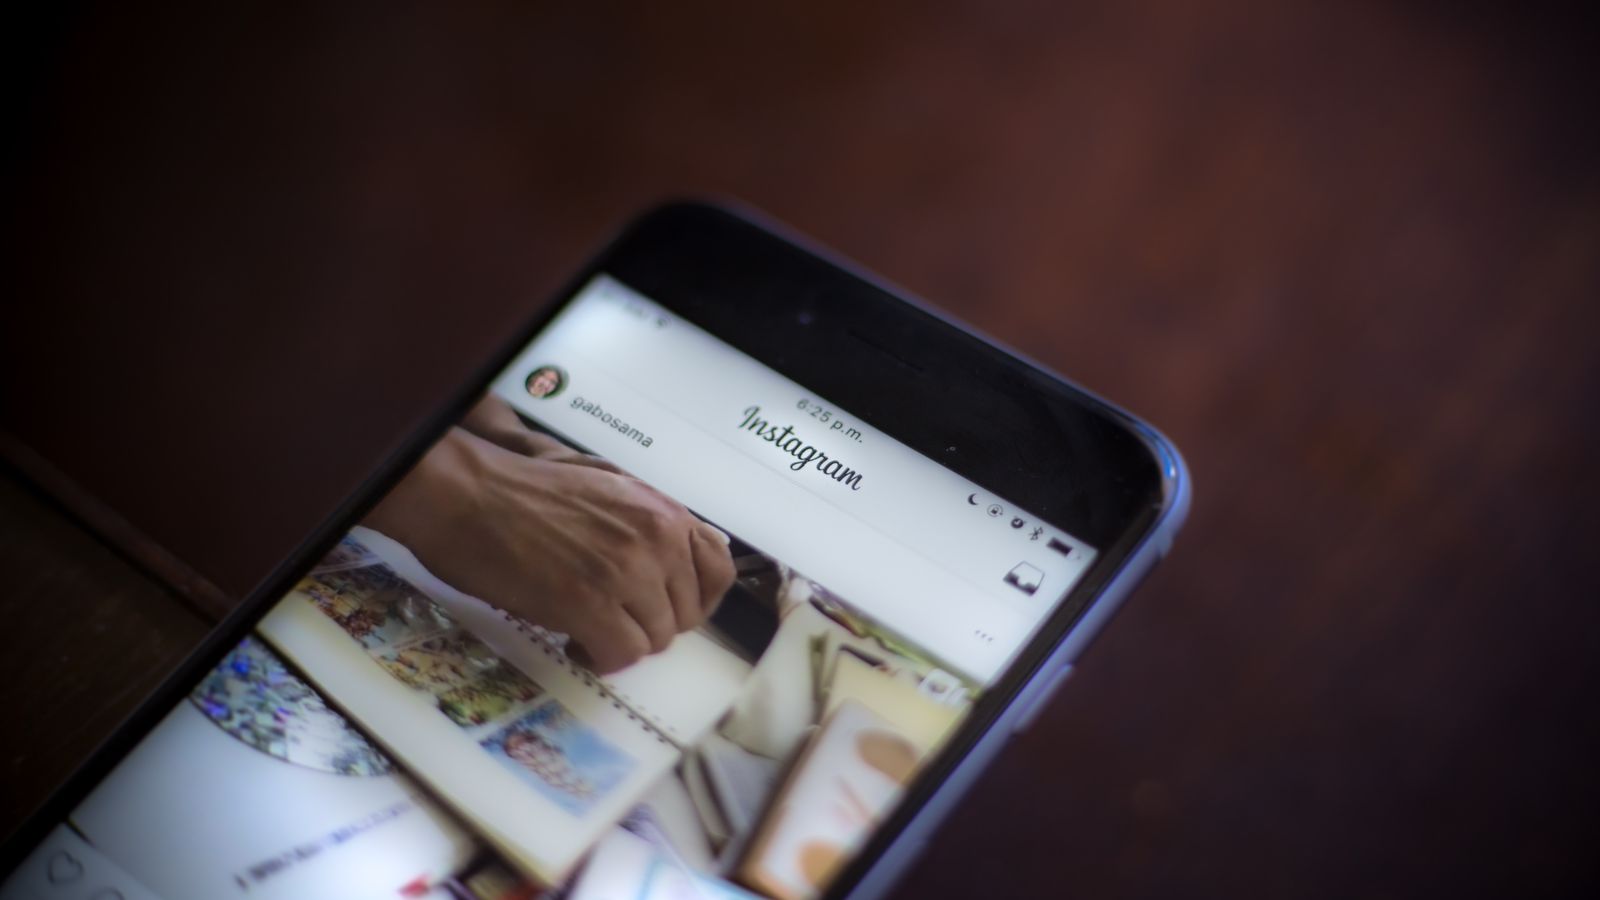 Instagram começa testes para retirada de “curtidas” em fotos e vídeos